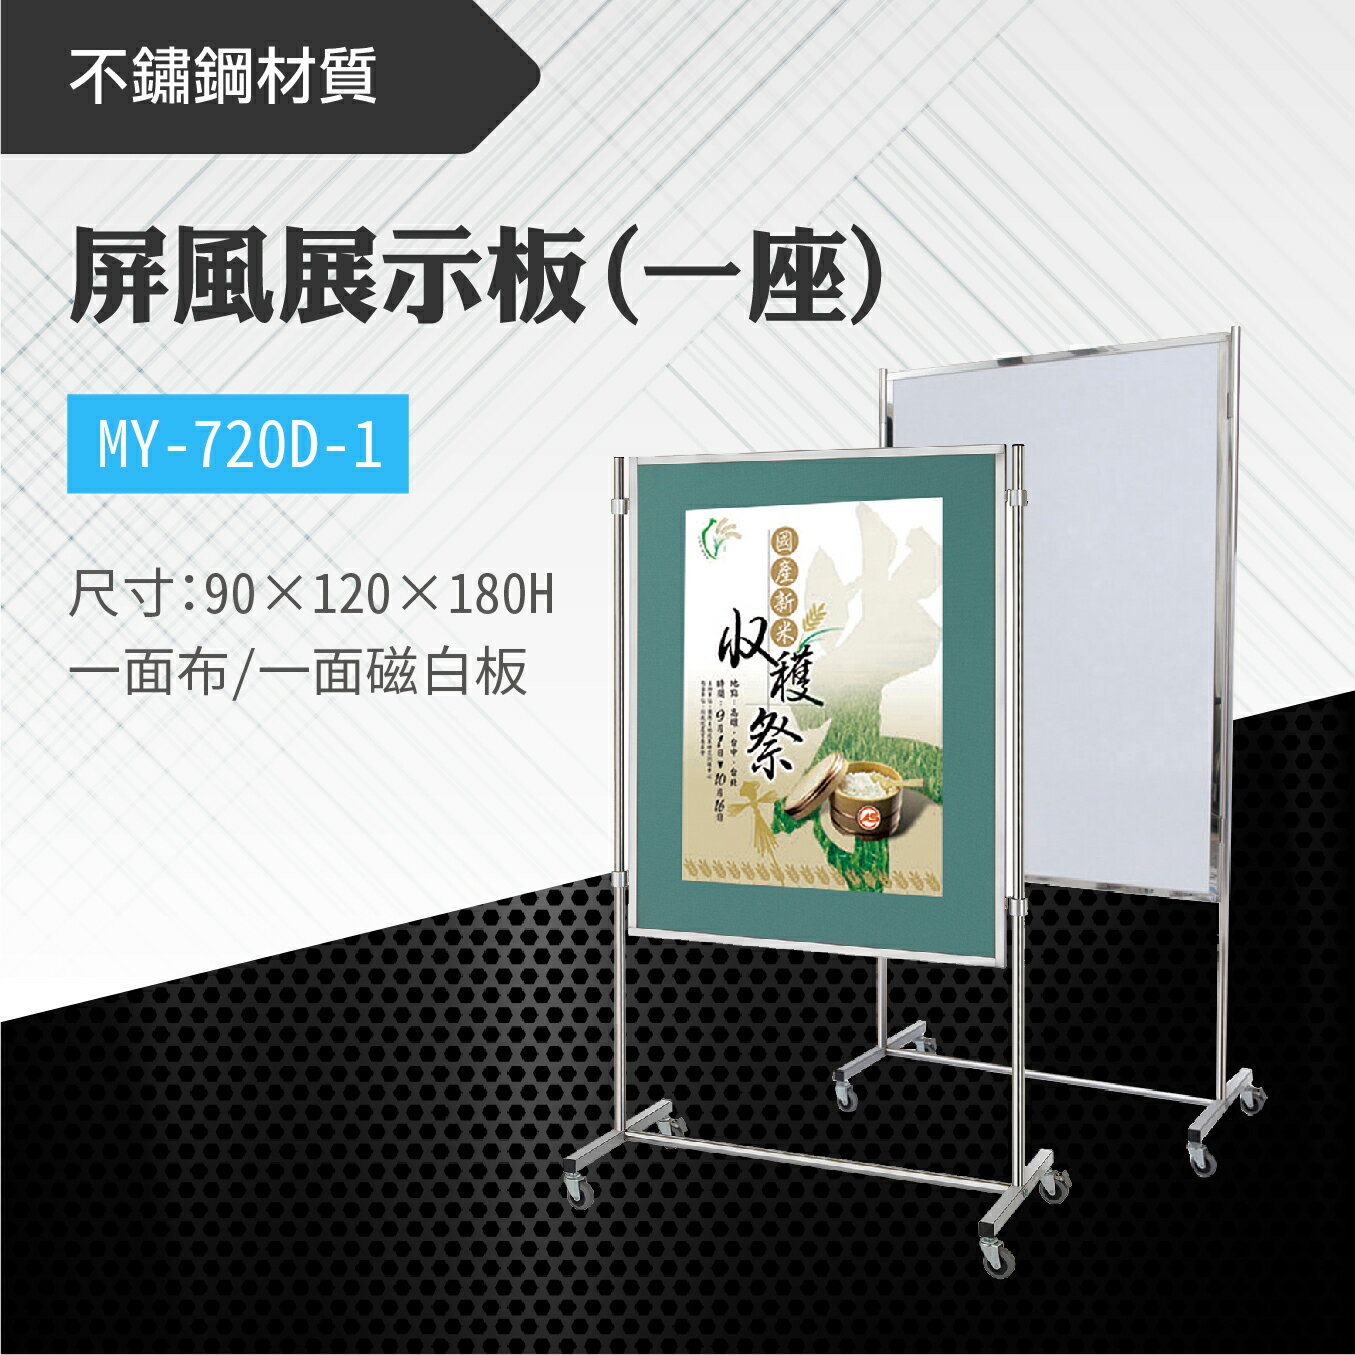 台灣製 屏風展示板MY-720D-1(布+白板) 布告欄 展板 海報板 立式展板 展示架 指示牌 廣告板 標示板 學校 活動